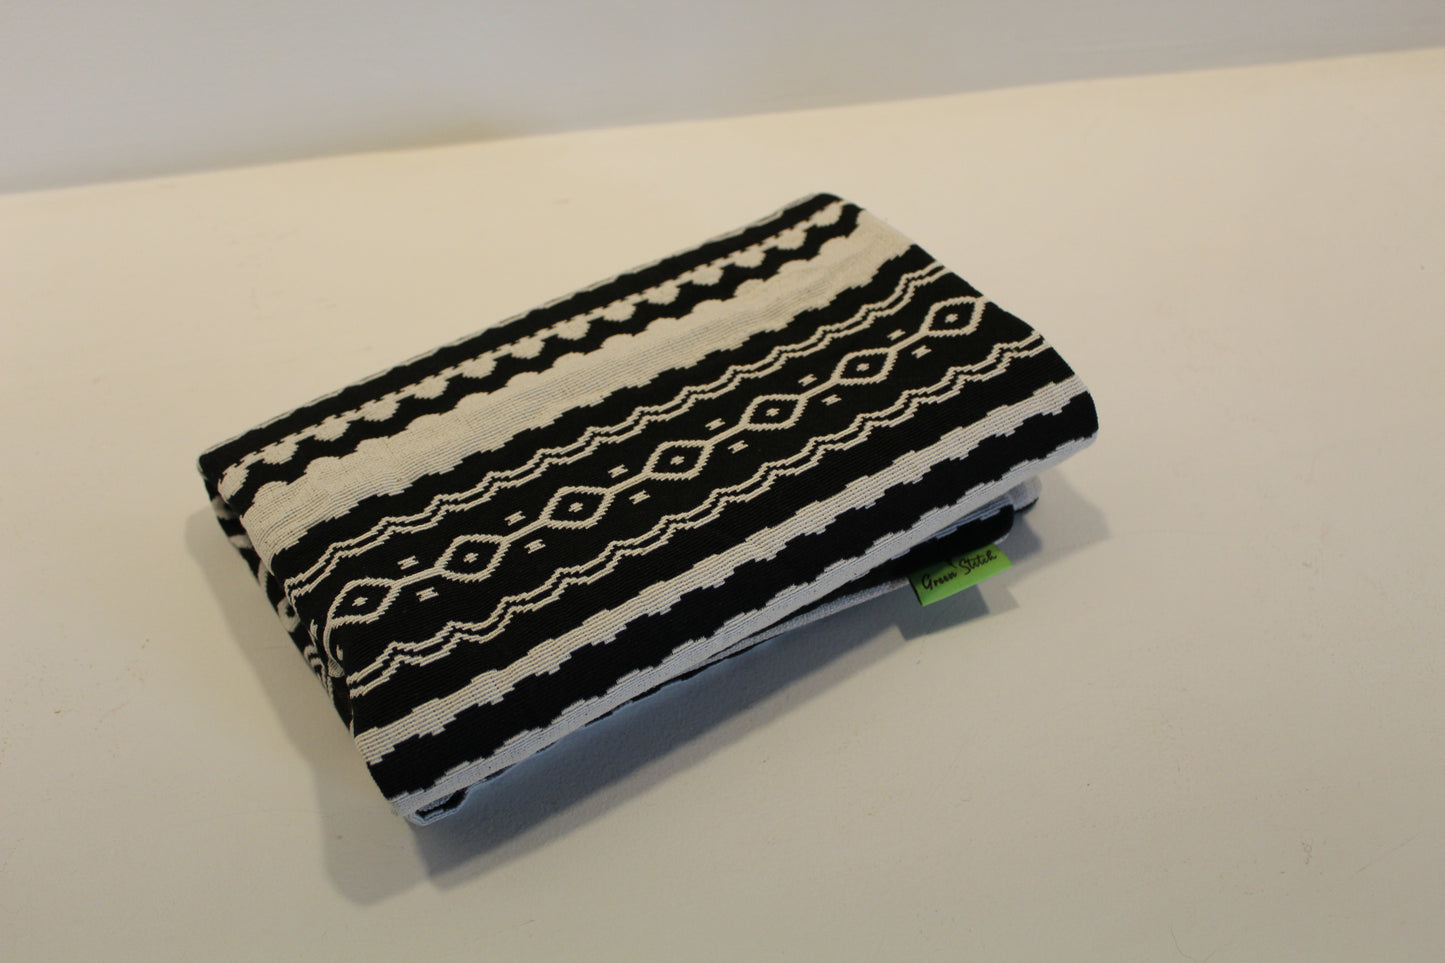 Black & White Striped - Cushion Cover - 45cm x 44cm